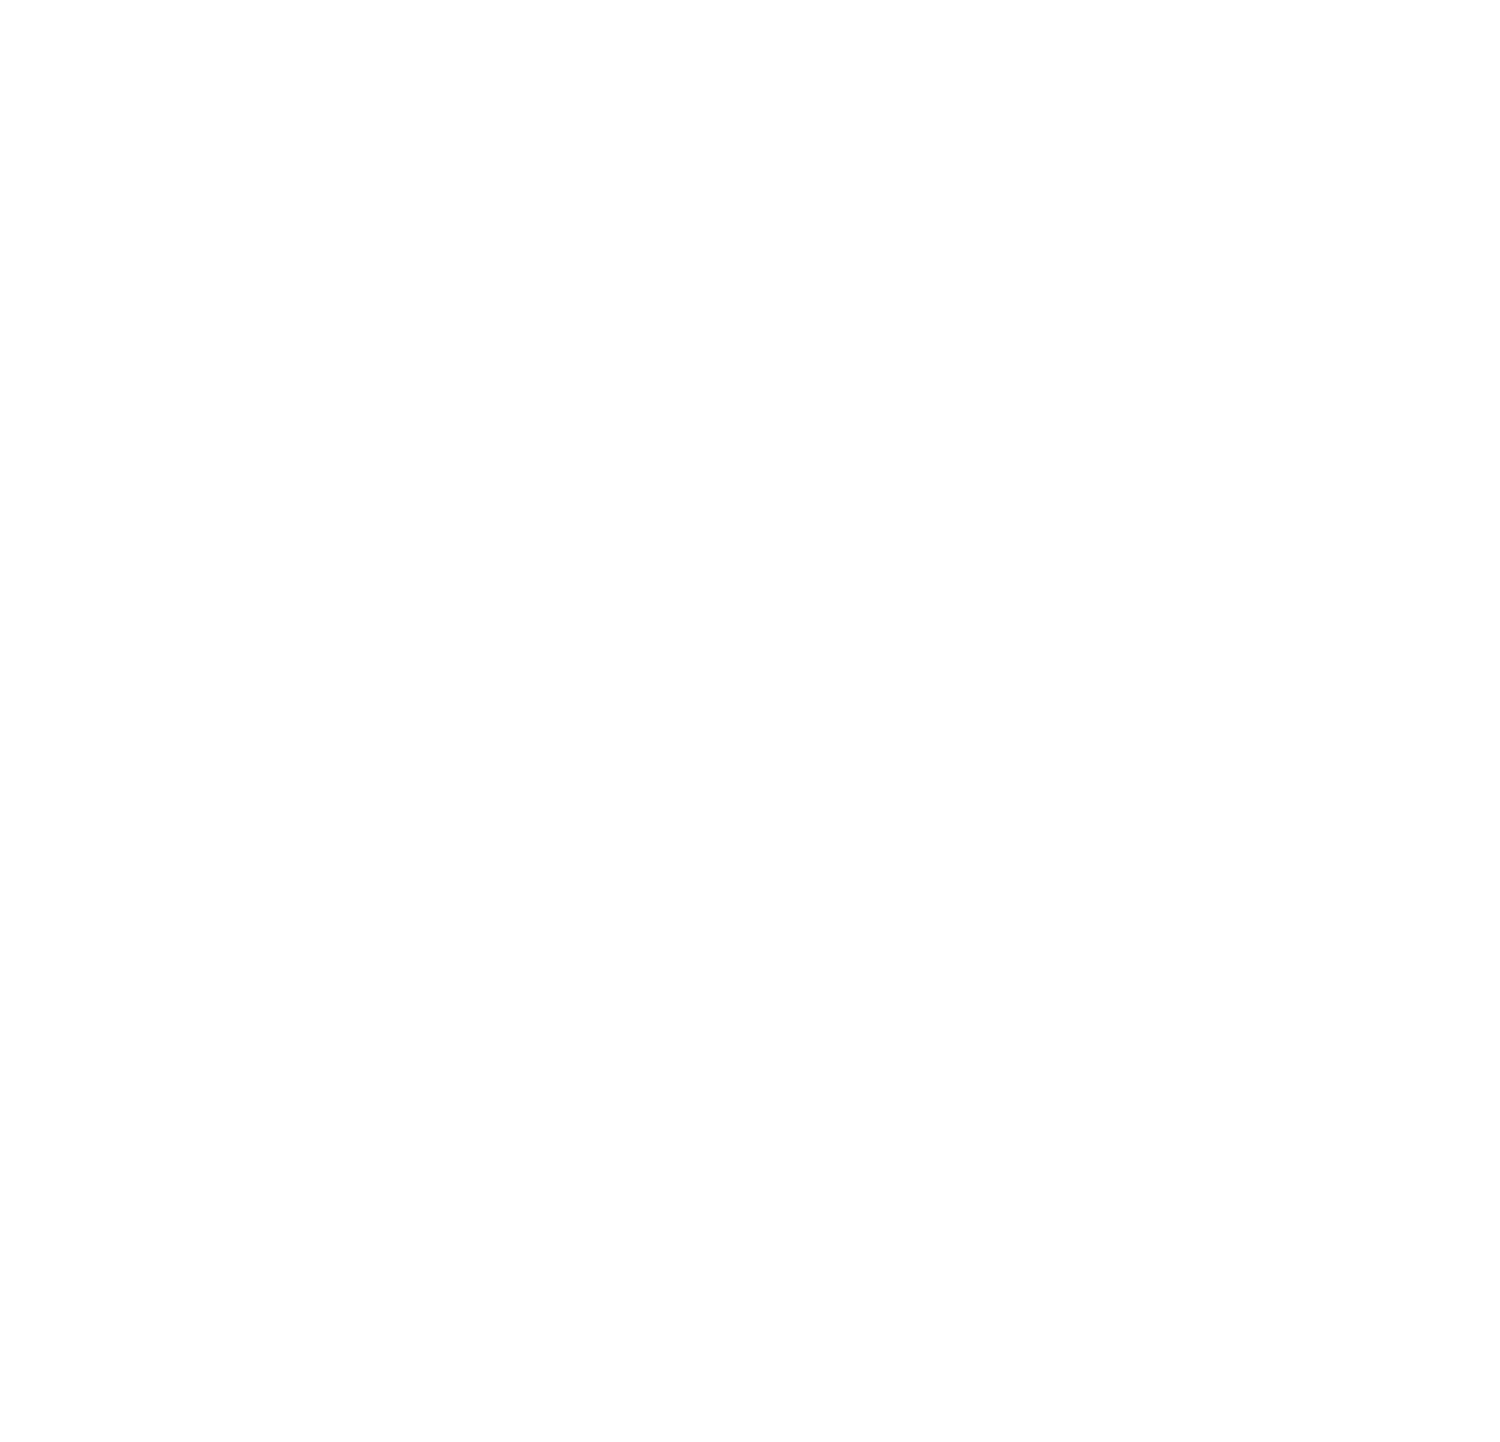 Deuces Barber Shop